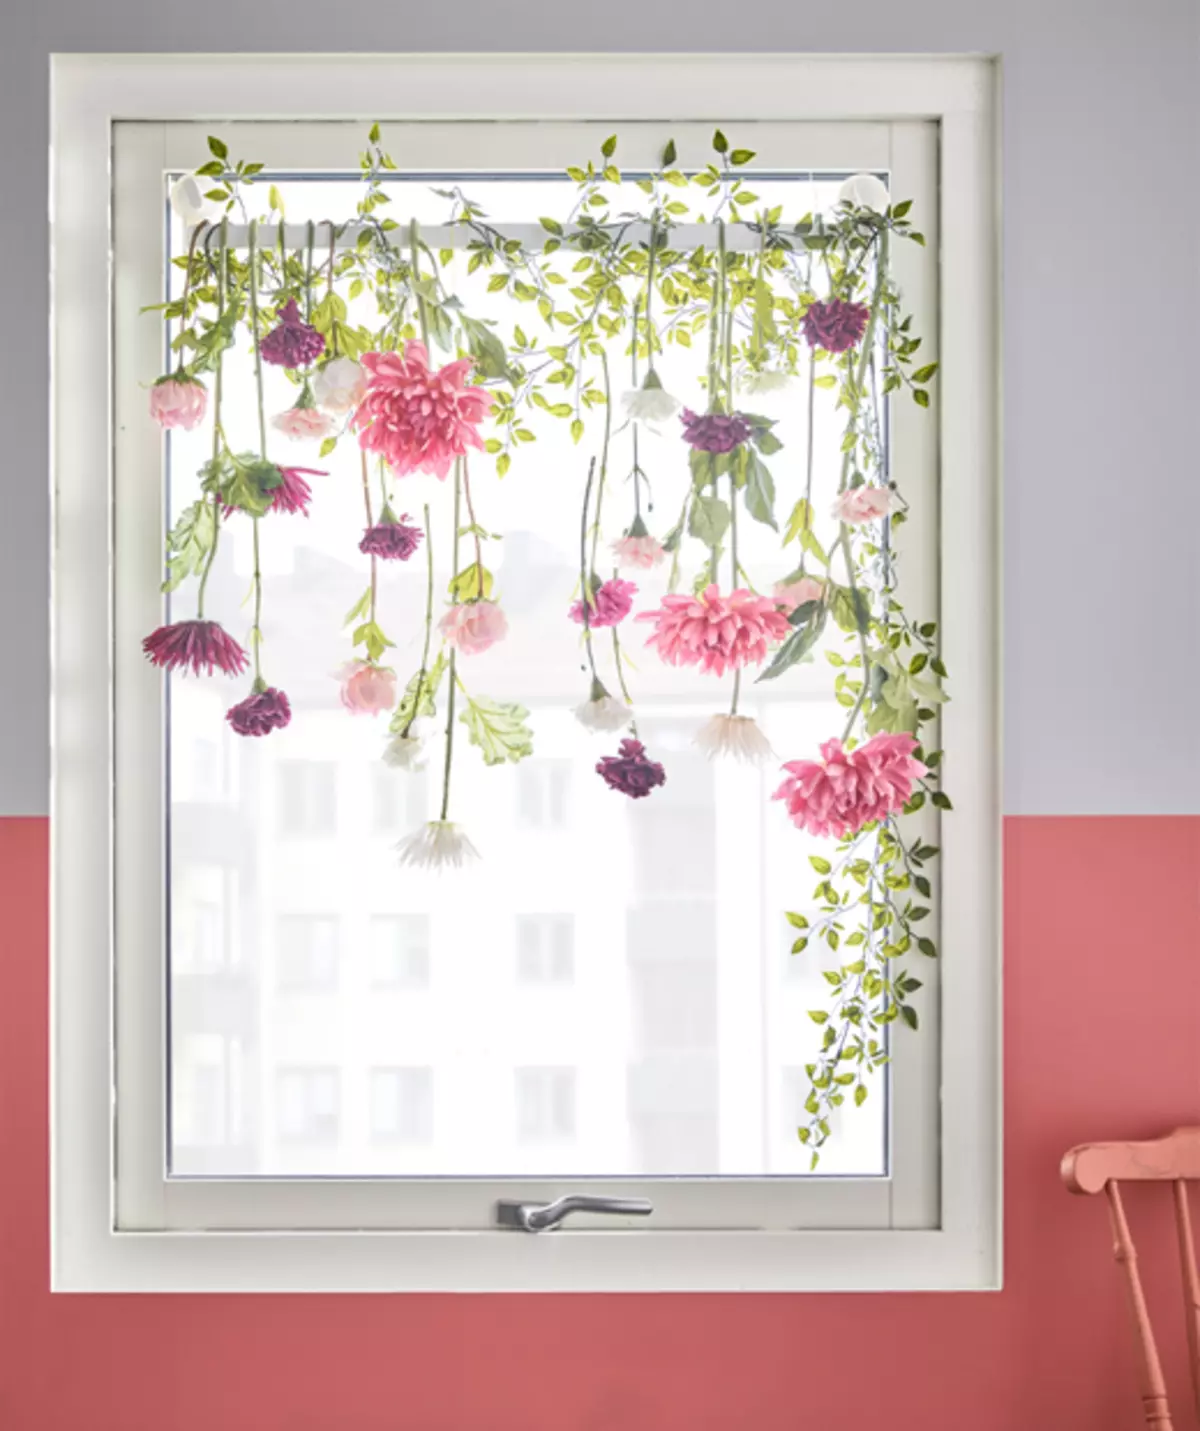 Ideja e dizajnit lule dekorative në formën e tyl në një dritare foto